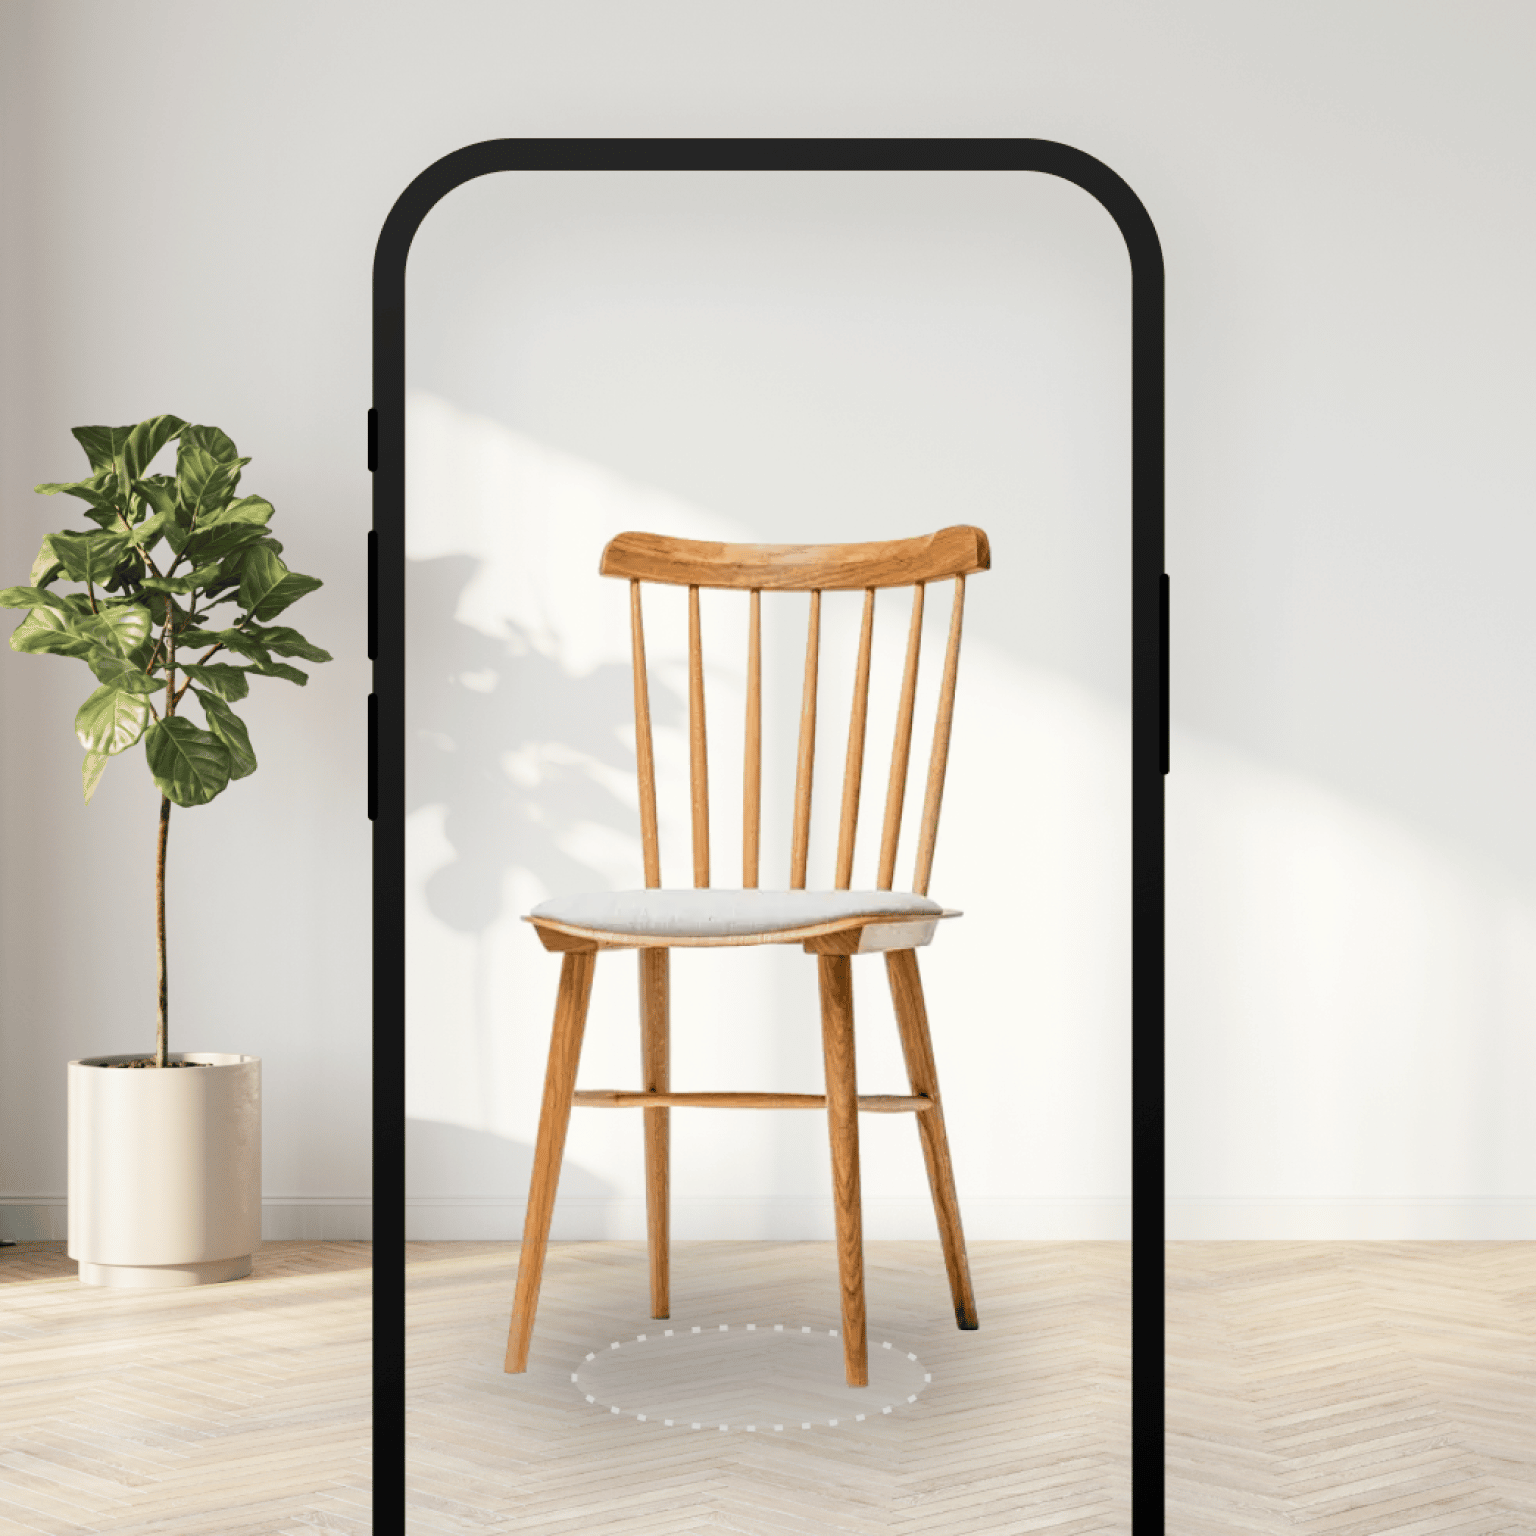 Vertebrae Chair inside of Mobile Screen